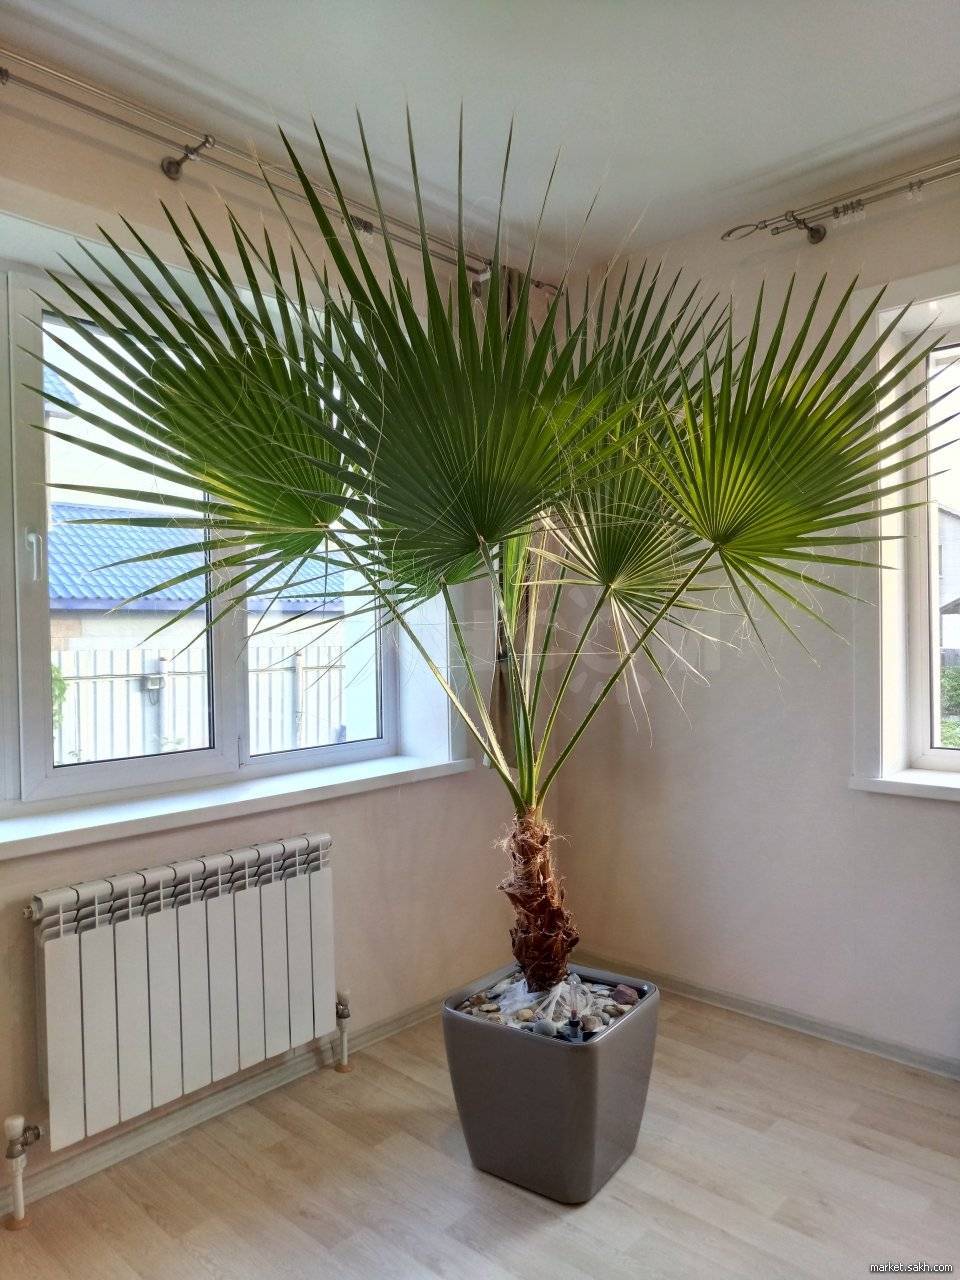 Правила ухода за пальмой вашингтония в домашних условиях – подробное руководство [2019]